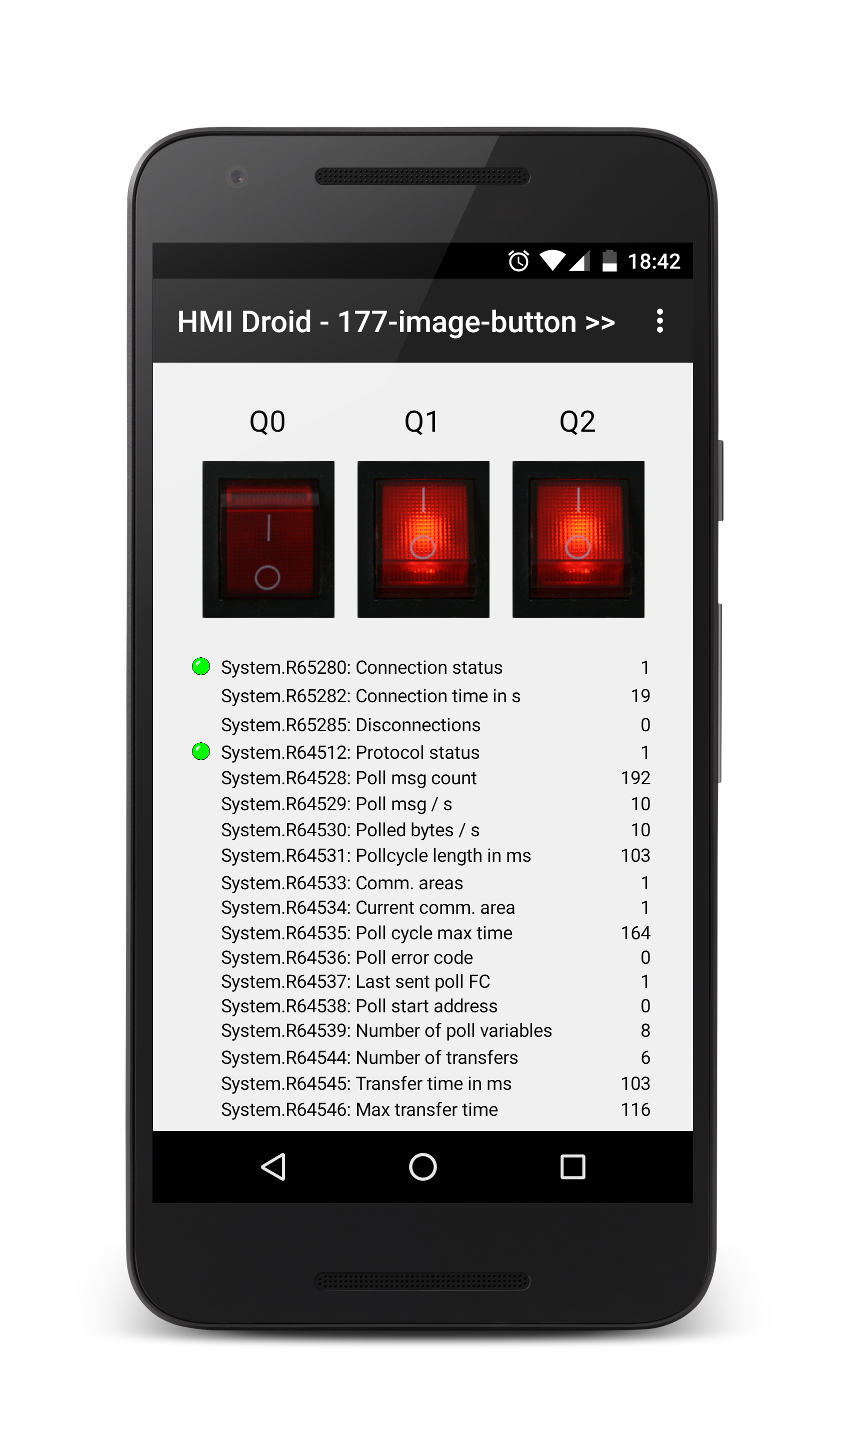 HMI Droid Image Button